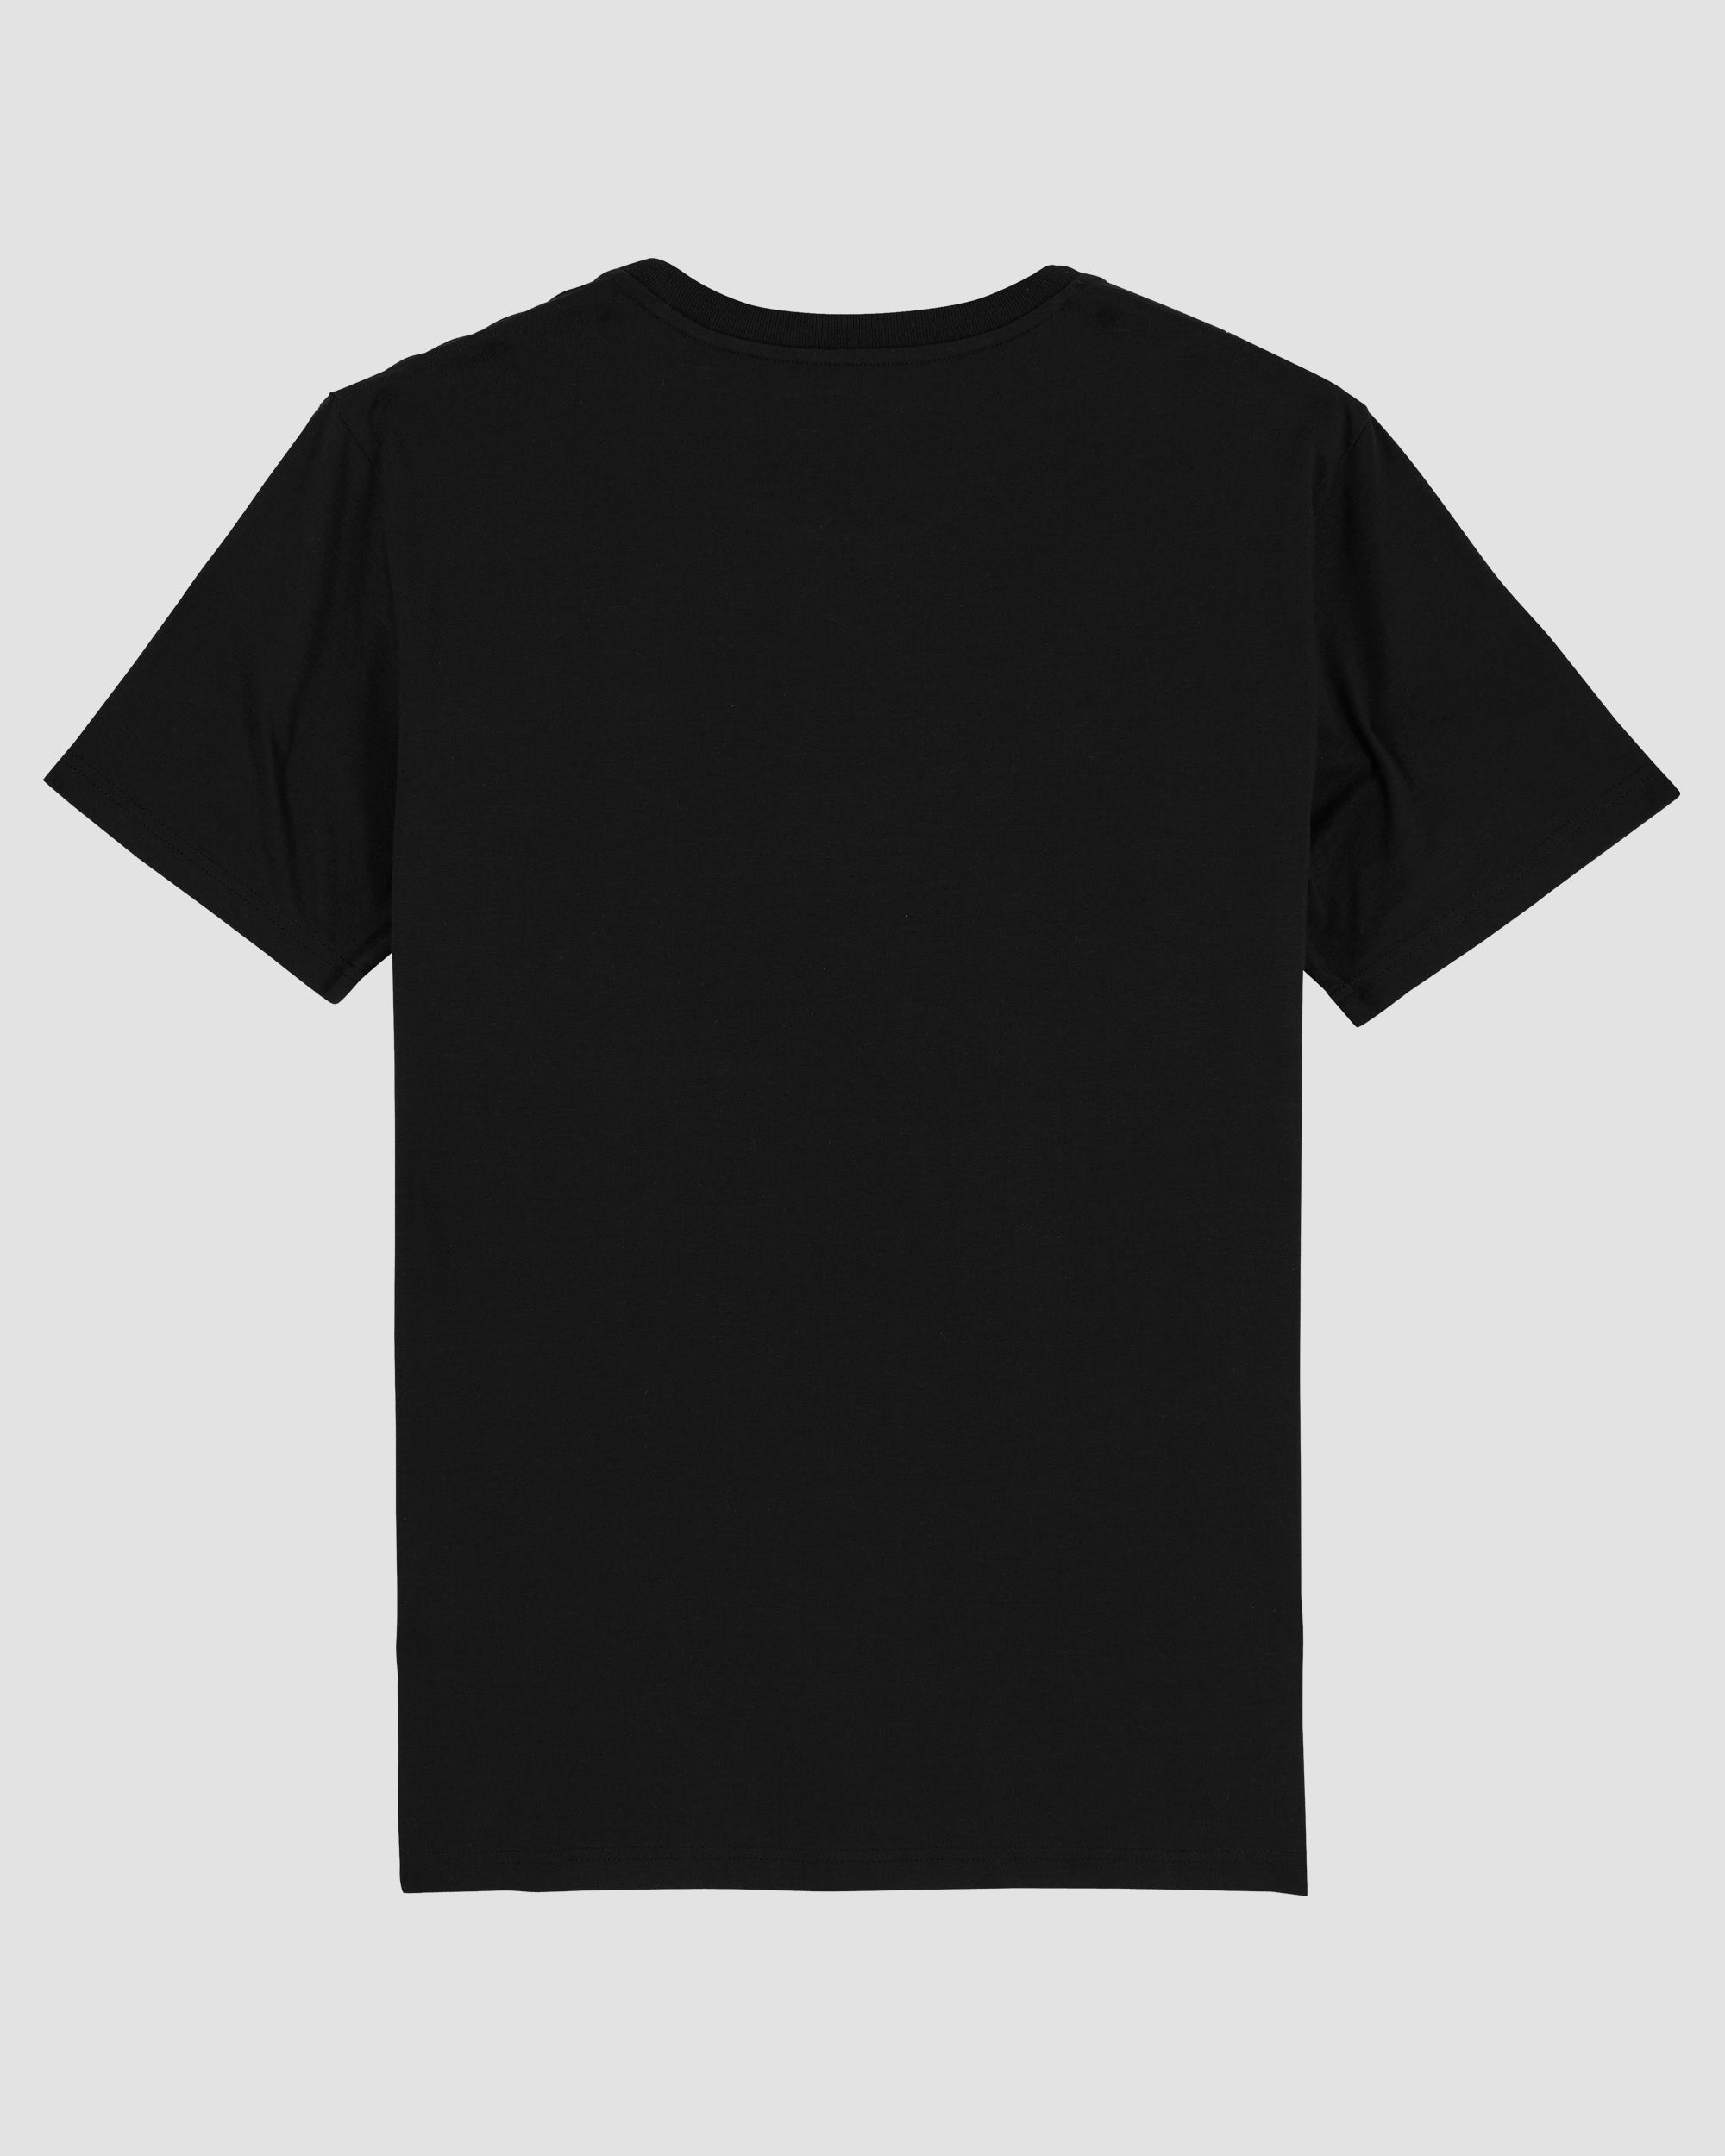 Money Maker Wolfgang | 3-Style T-Shirt